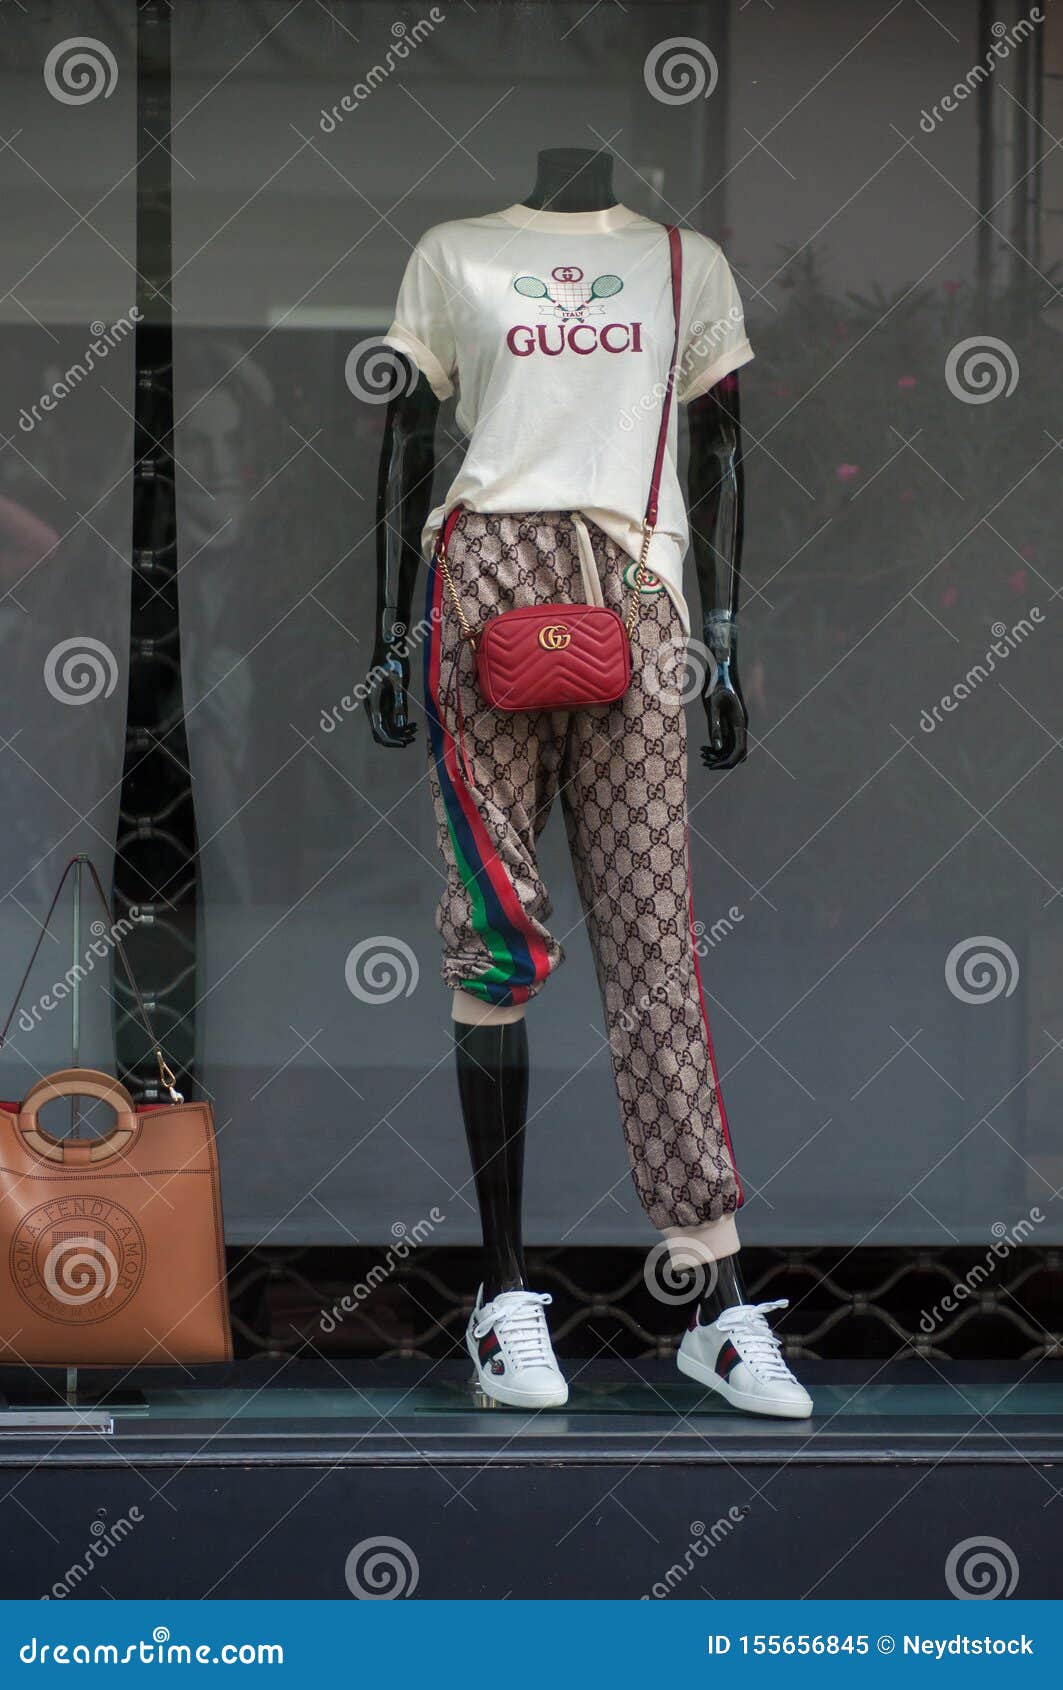 Ropa Del Verano En Maniquí En La Tienda De Gucci Imagen editorial - Imagen de internacional, 155656845